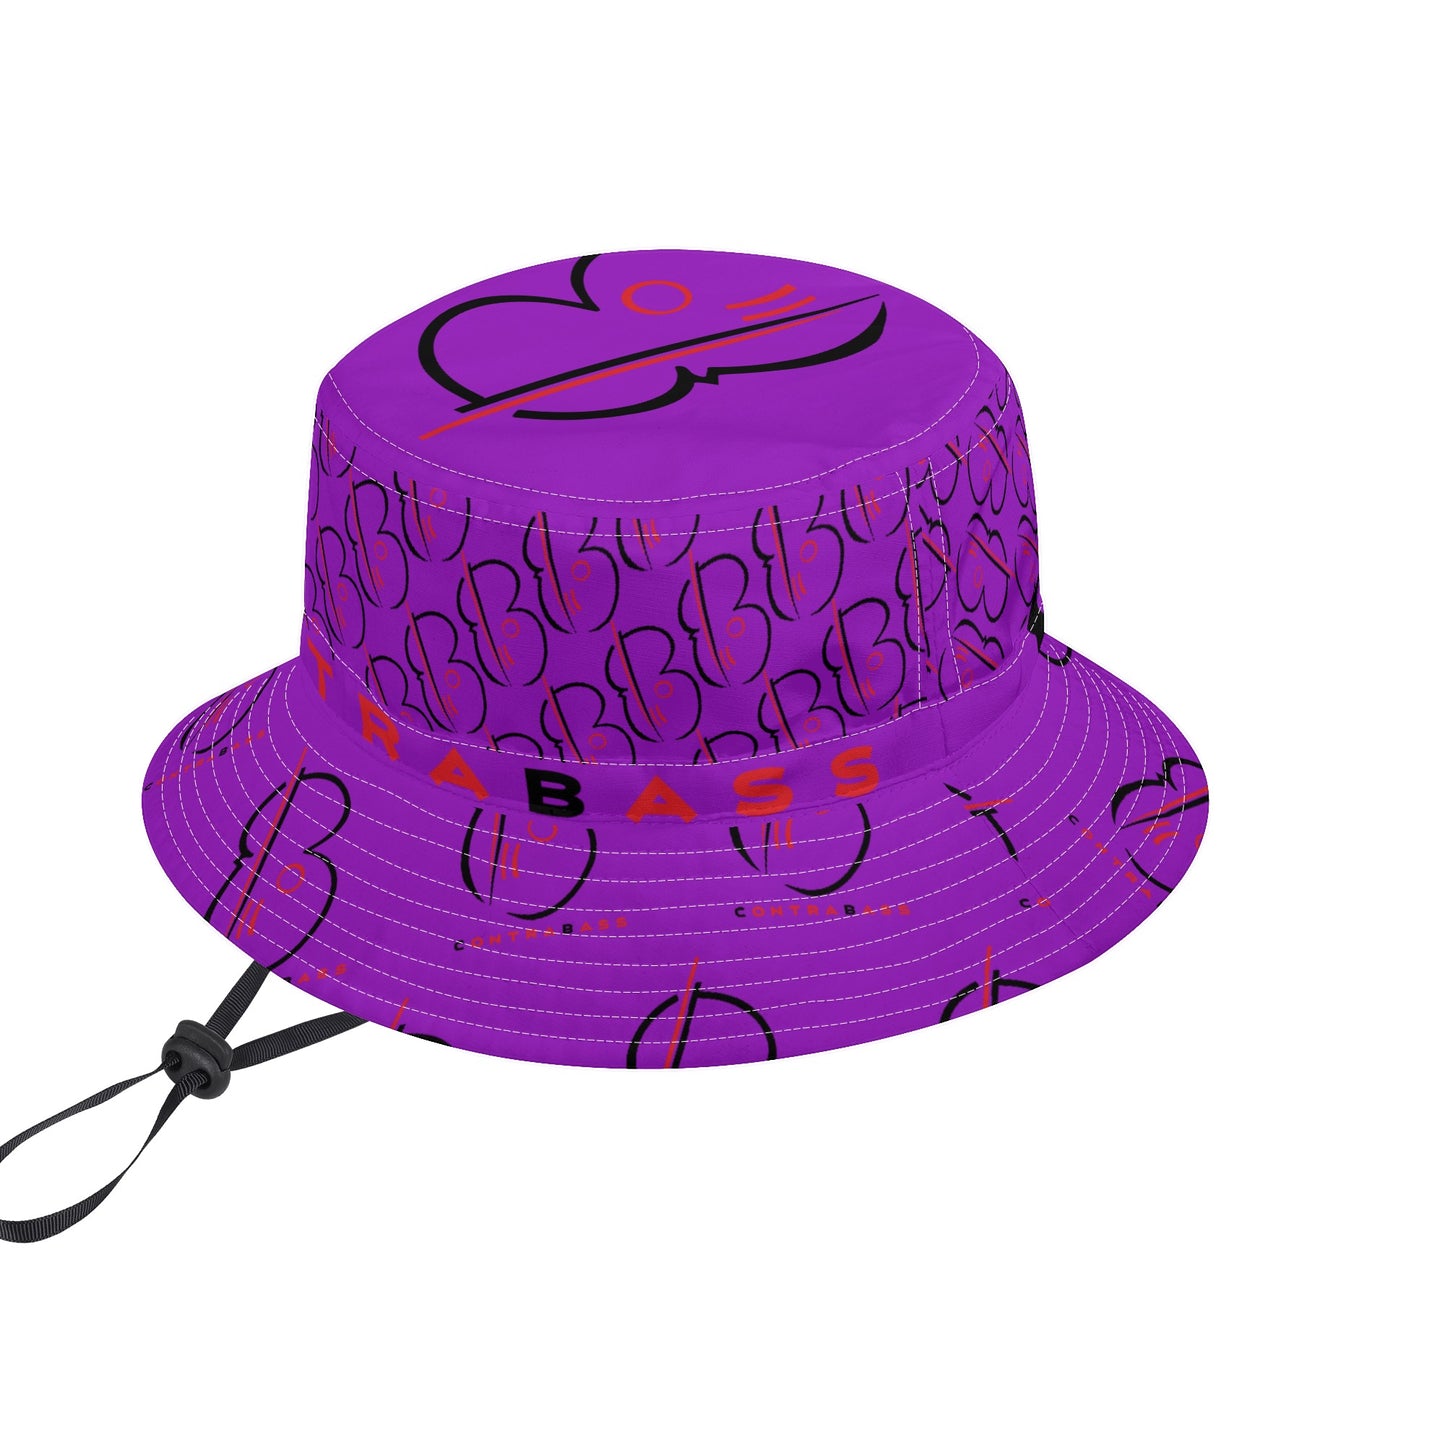 The "ContraBASS" Bucket Hat